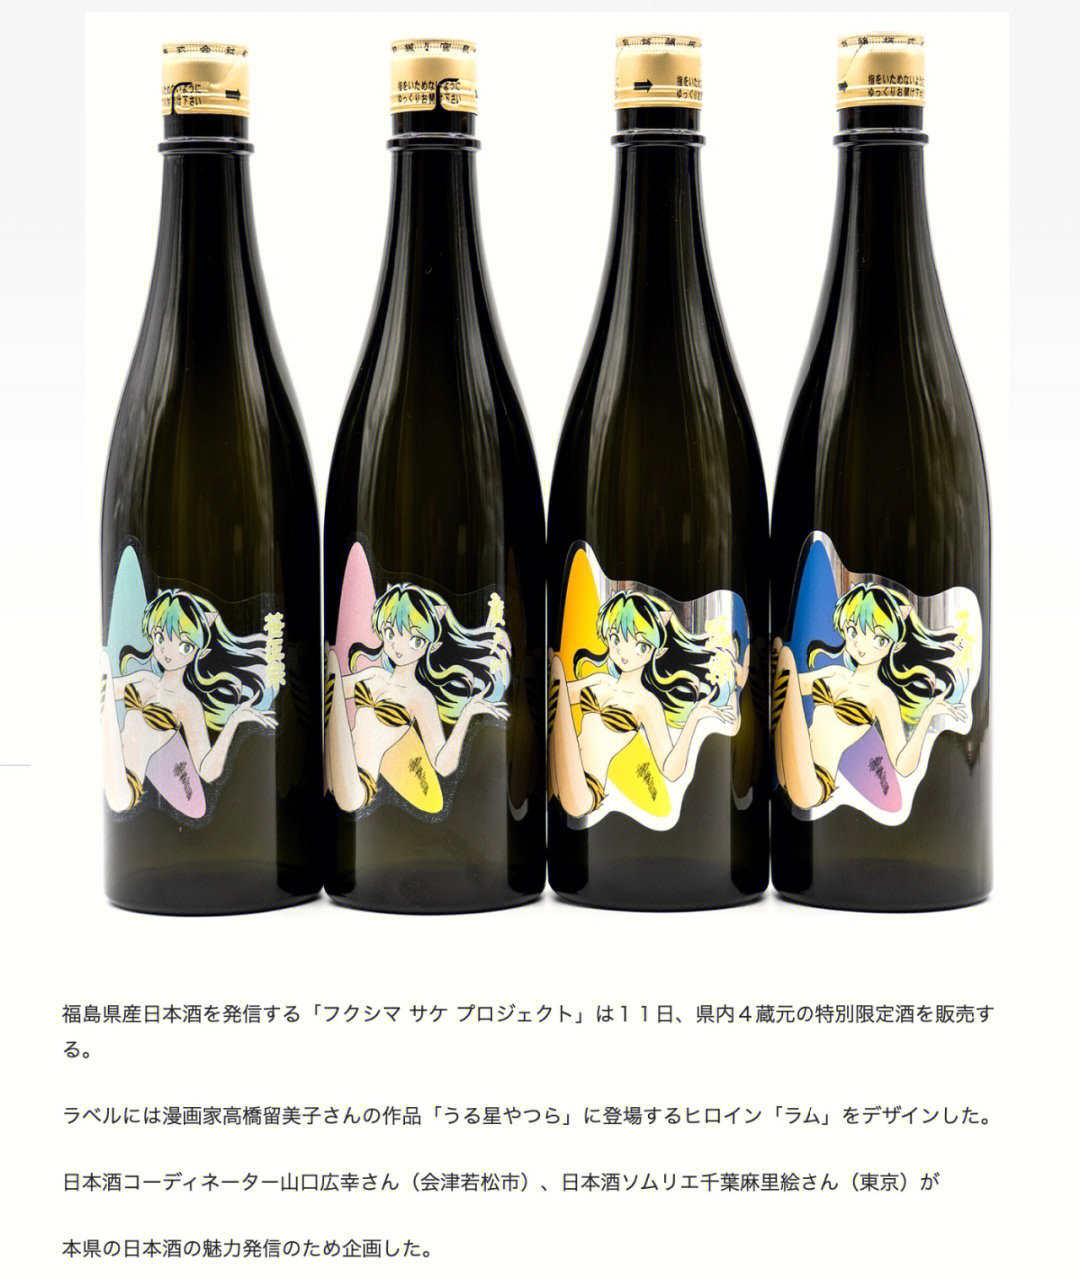 日本酒二泉子照片图片